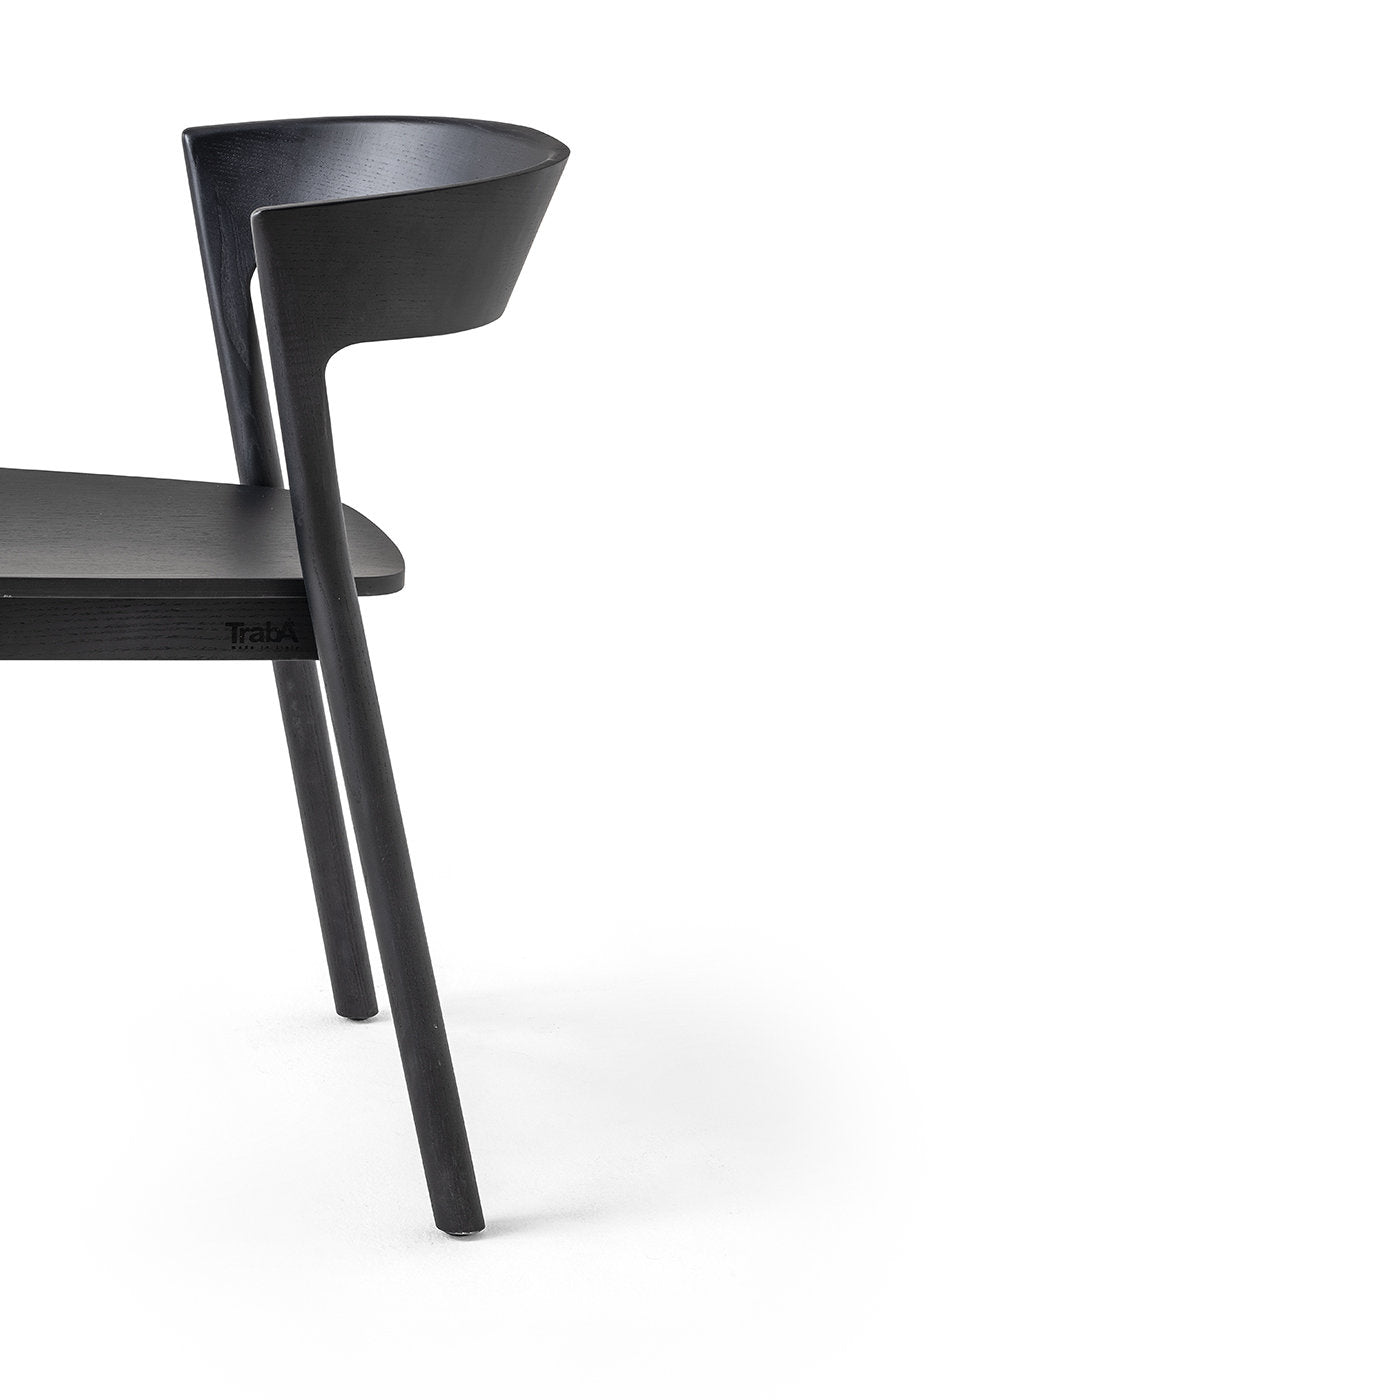 Edith Le Black Chair by Massimo Broglio - Alternative view 3